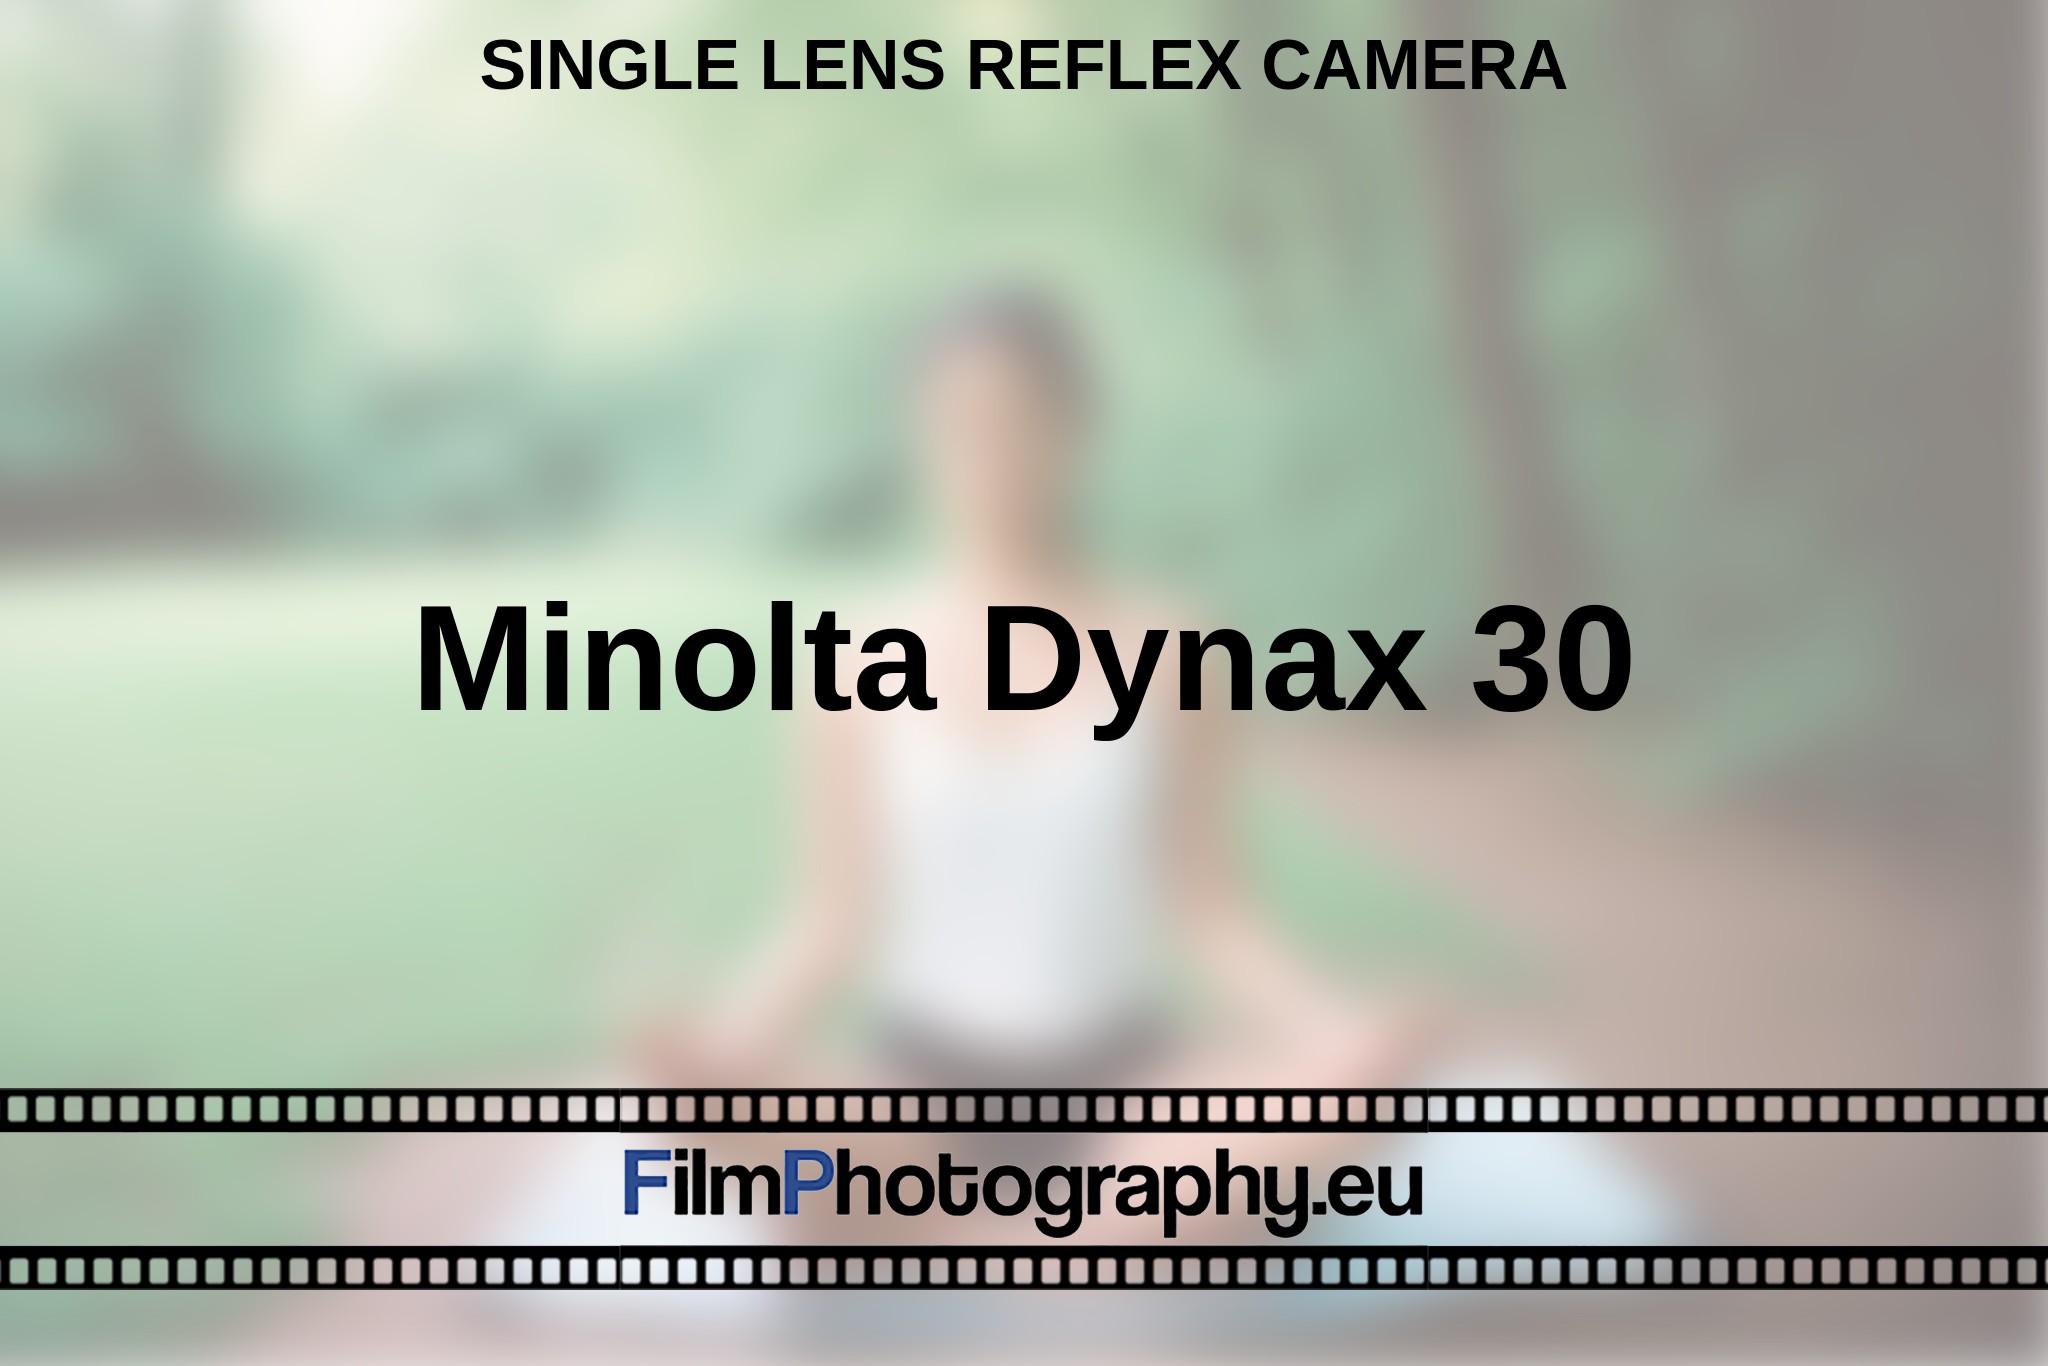 minolta-dynax-30-single-lens-reflex-camera-en-bnv.jpg